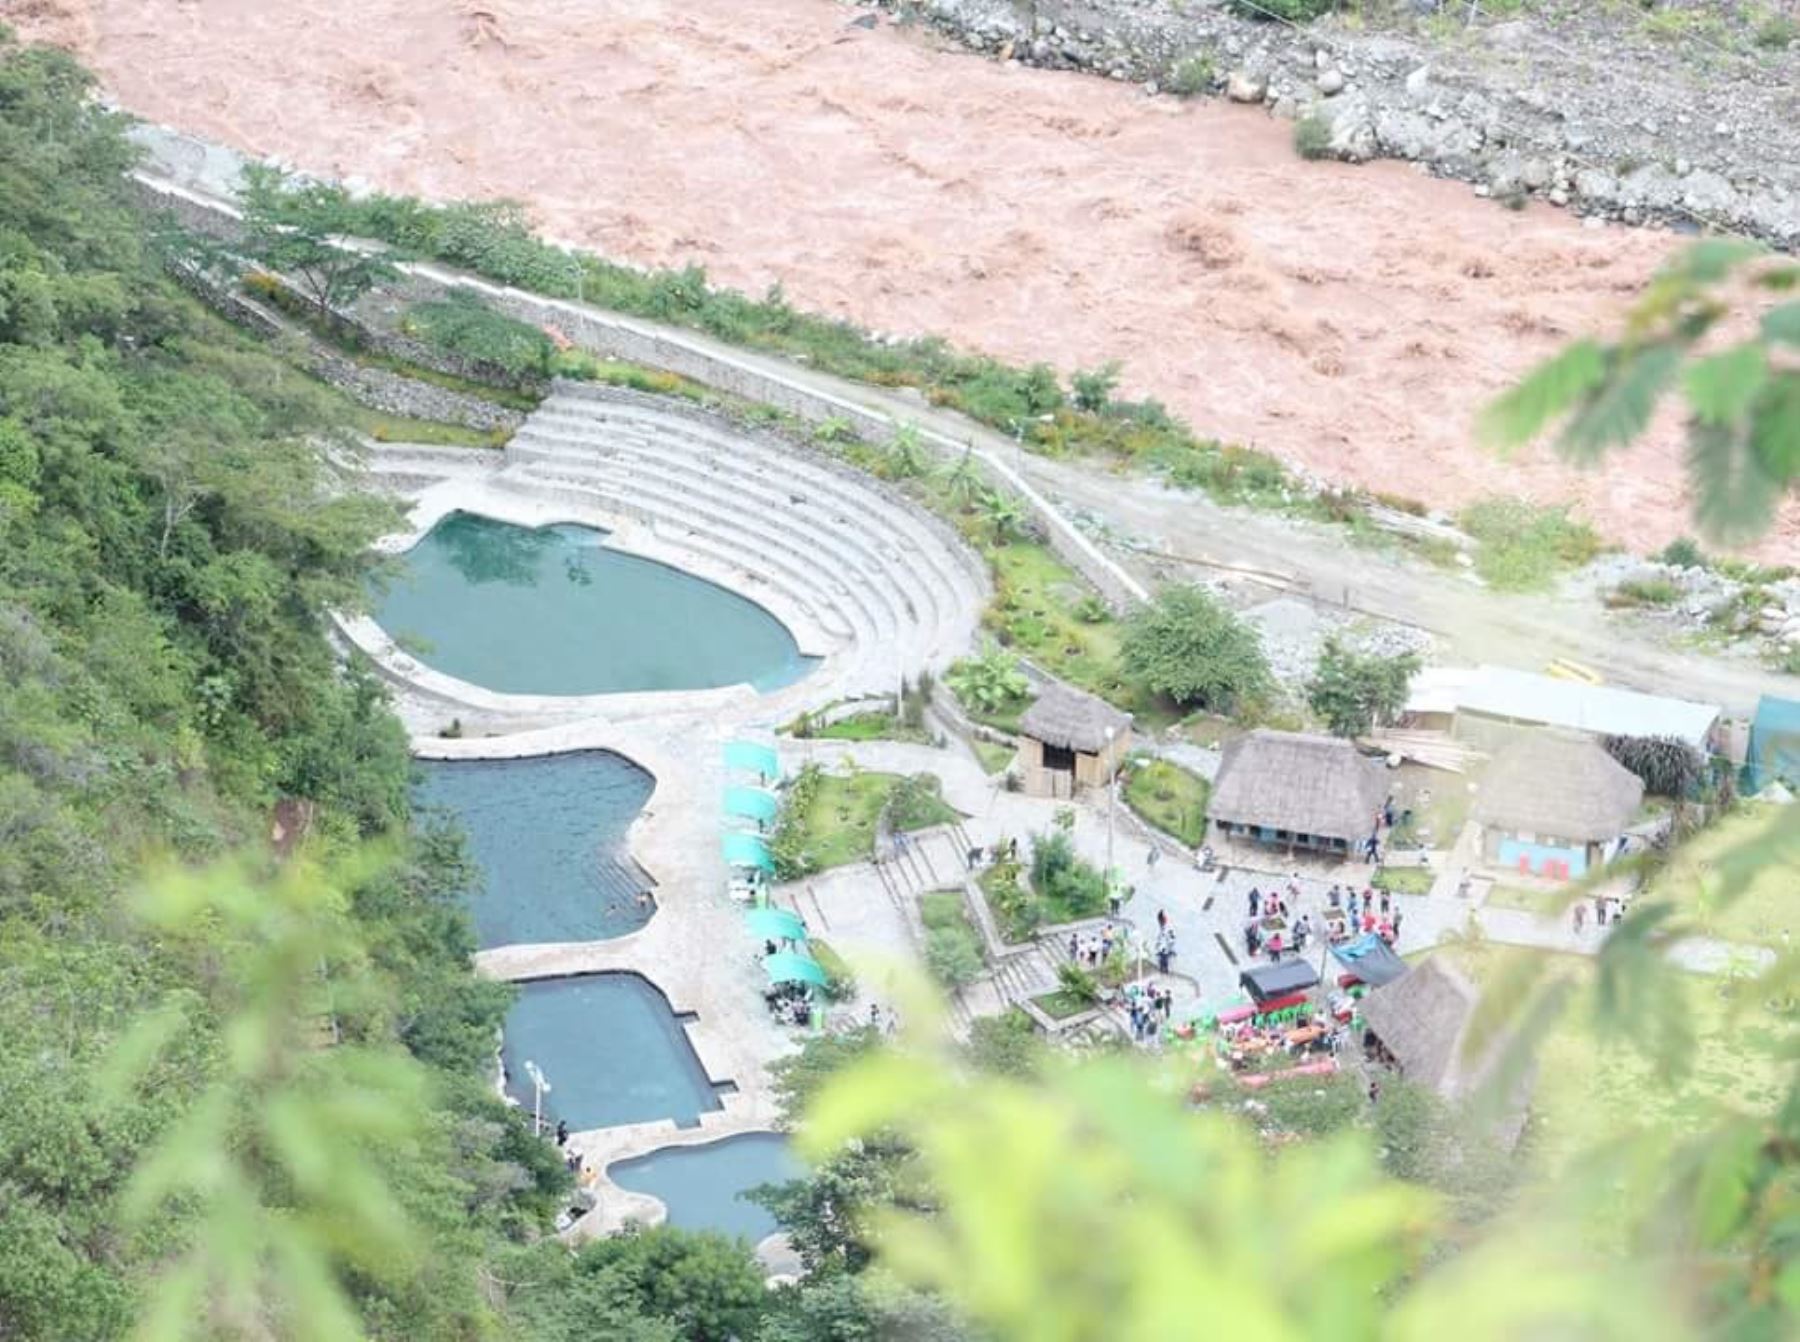 Autoridades de Cusco unen esfuerzos para reencauzar el río Vilcanota y proteger el balneario turístico de Cocalmayo, ubicado en el distrito de Santa Teresa, provincia de La Convención. ANDINA/Difusión